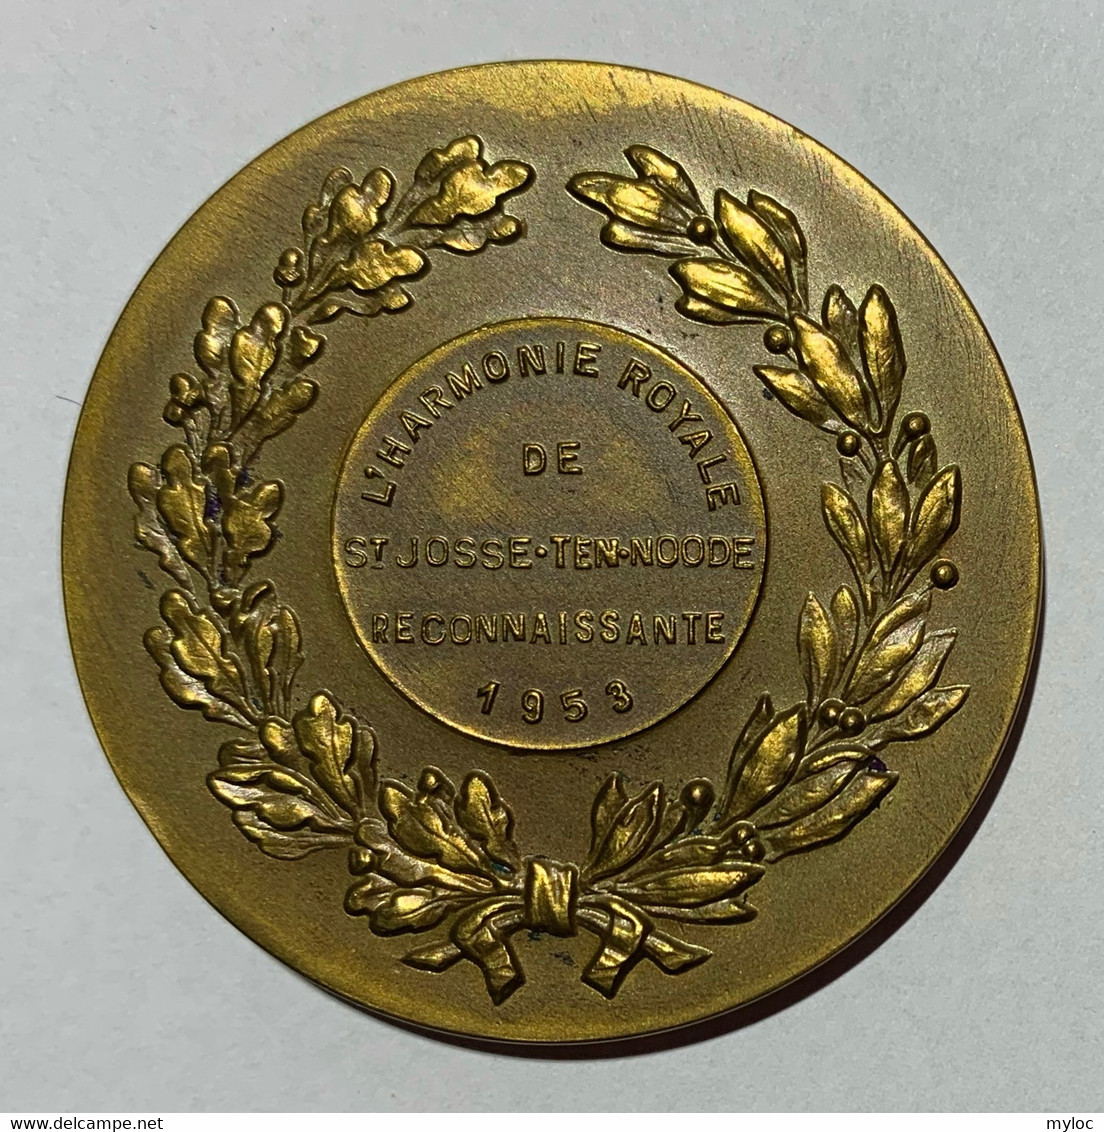 Médaille Bronze. Femme Avec Lyre. L'Harmonie Royale De Saint-Josse-Ten-Noode.  Reconnaissante 1953 - Professionnels / De Société